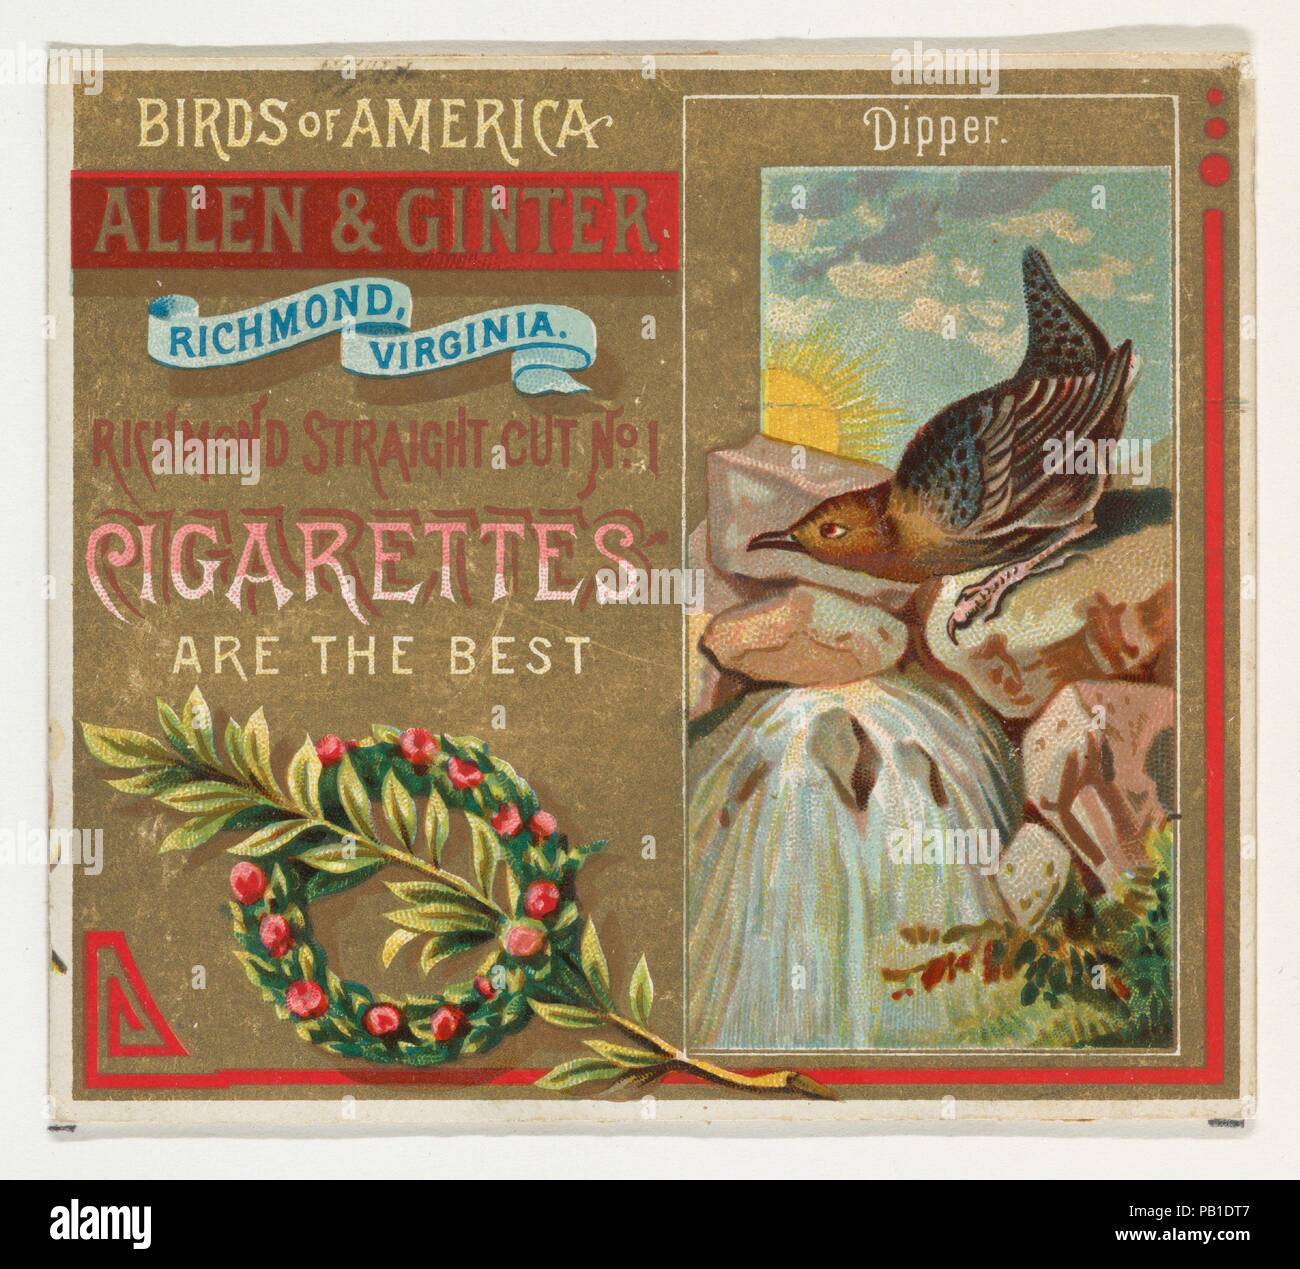 Il bilanciere, da uccelli d'America serie (N37) per Allen & Ginter sigarette. Dimensioni: foglio: 2 7/8 x 3 1/4 in. (7,3 x 8,3 cm). Editore: Rilasciato da Allen & Ginter (American, Richmond, Virginia). Data: 1888. Scambio di carte dal 'Uccelli d'America' serie (N37), rilasciato nel 1888 in un set di 50 schede per promuovere Allen & Ginter marca di sigarette. La serie N37 riproduce le carte dalla N4 in una dimensione più grande. Museo: Metropolitan Museum of Art di New York, Stati Uniti d'America. Foto Stock